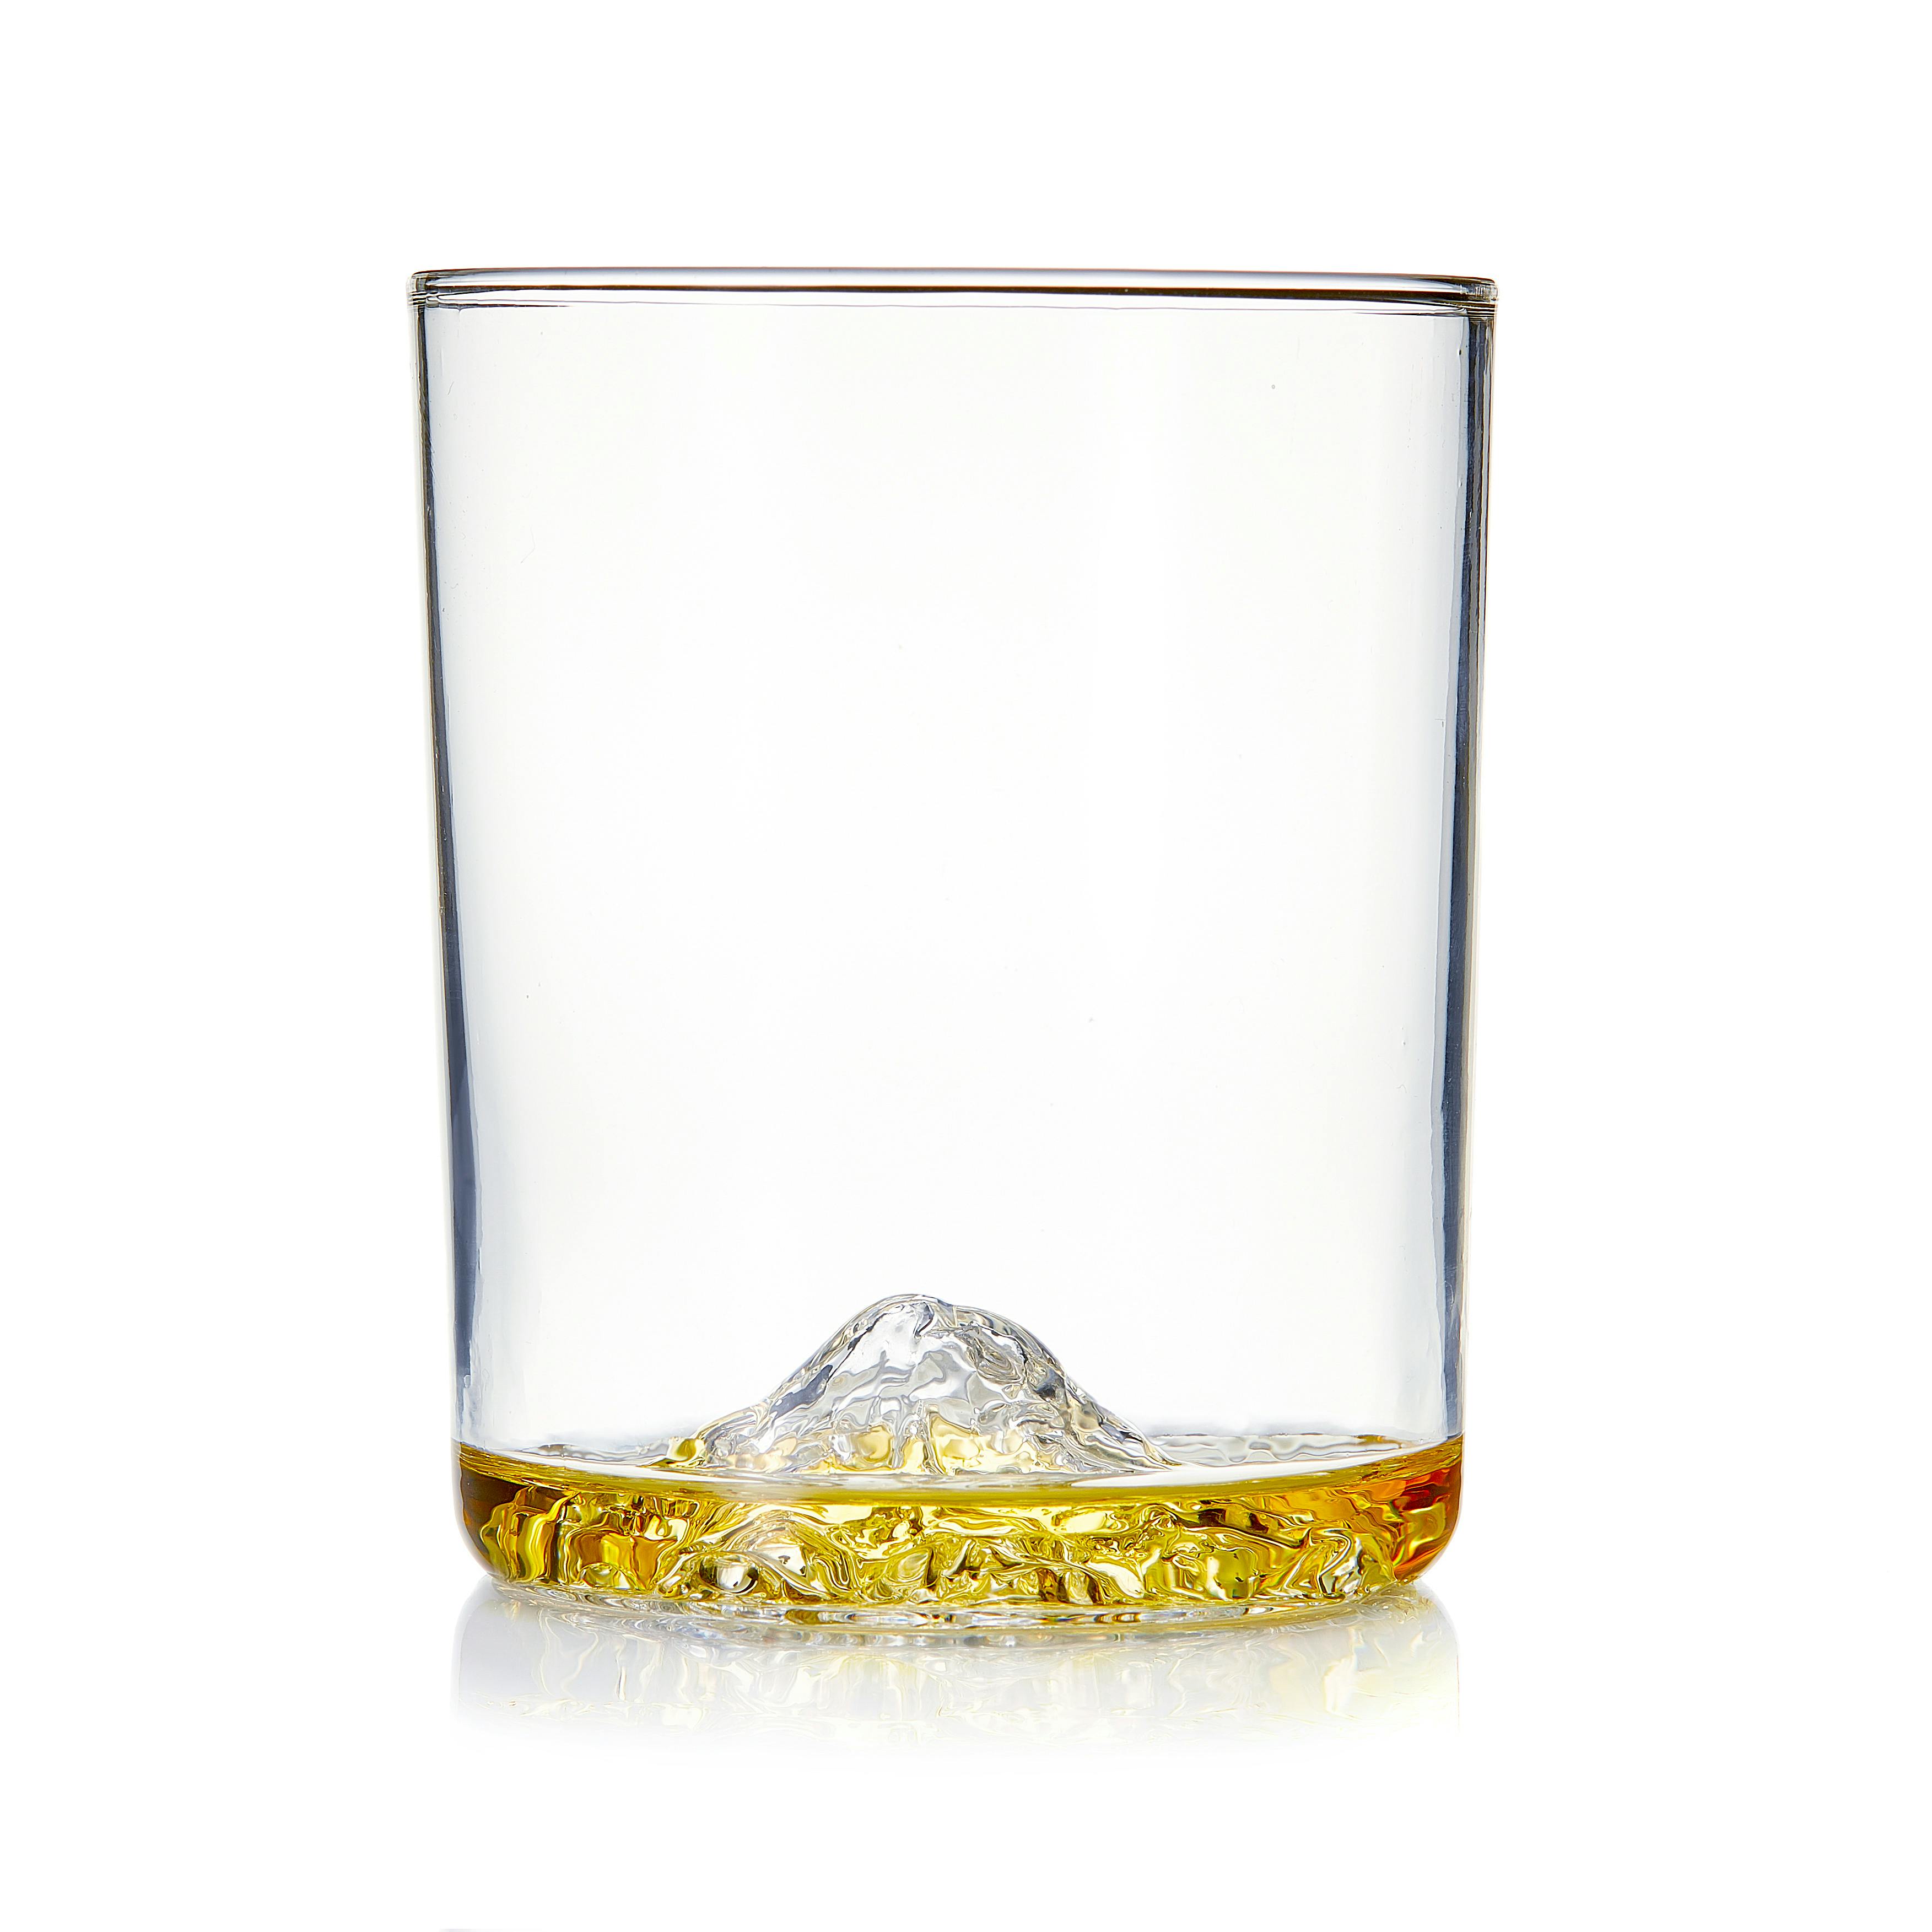 Whiskey Peaks Mountain Decanter + Mt. Rainier Set of 2 Whiskey Glasses